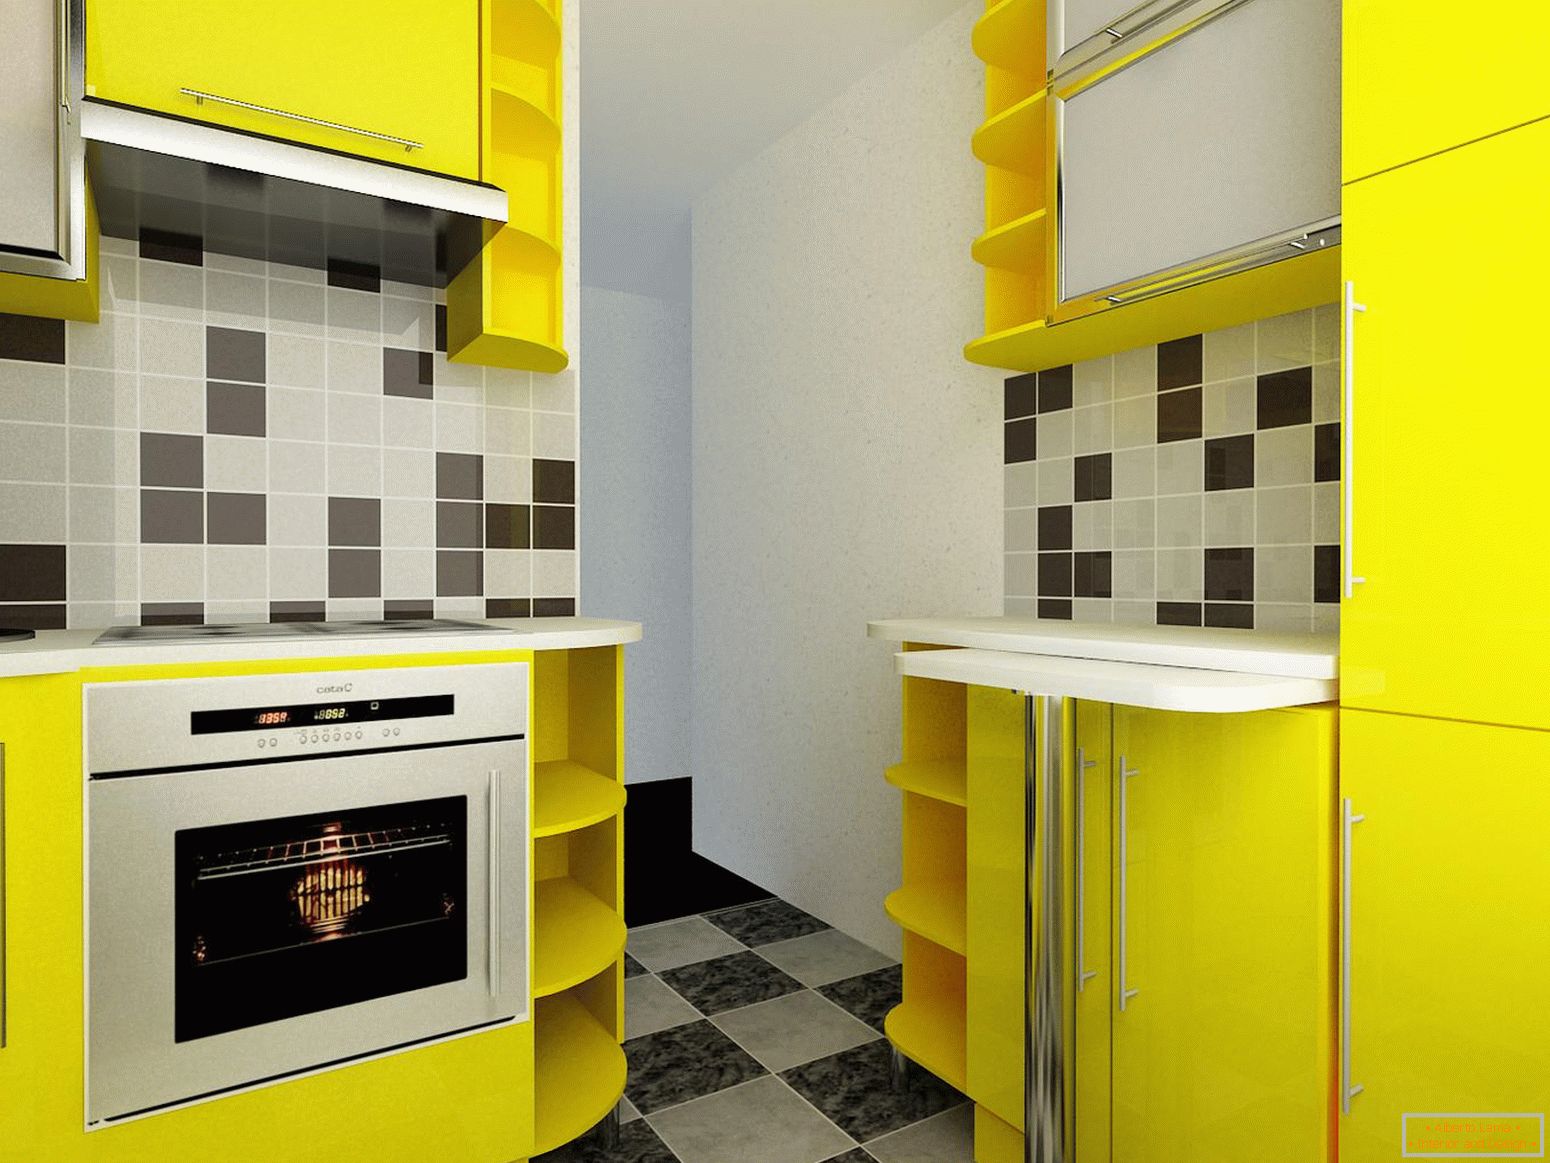 Malá kuchyně v žluté barvě